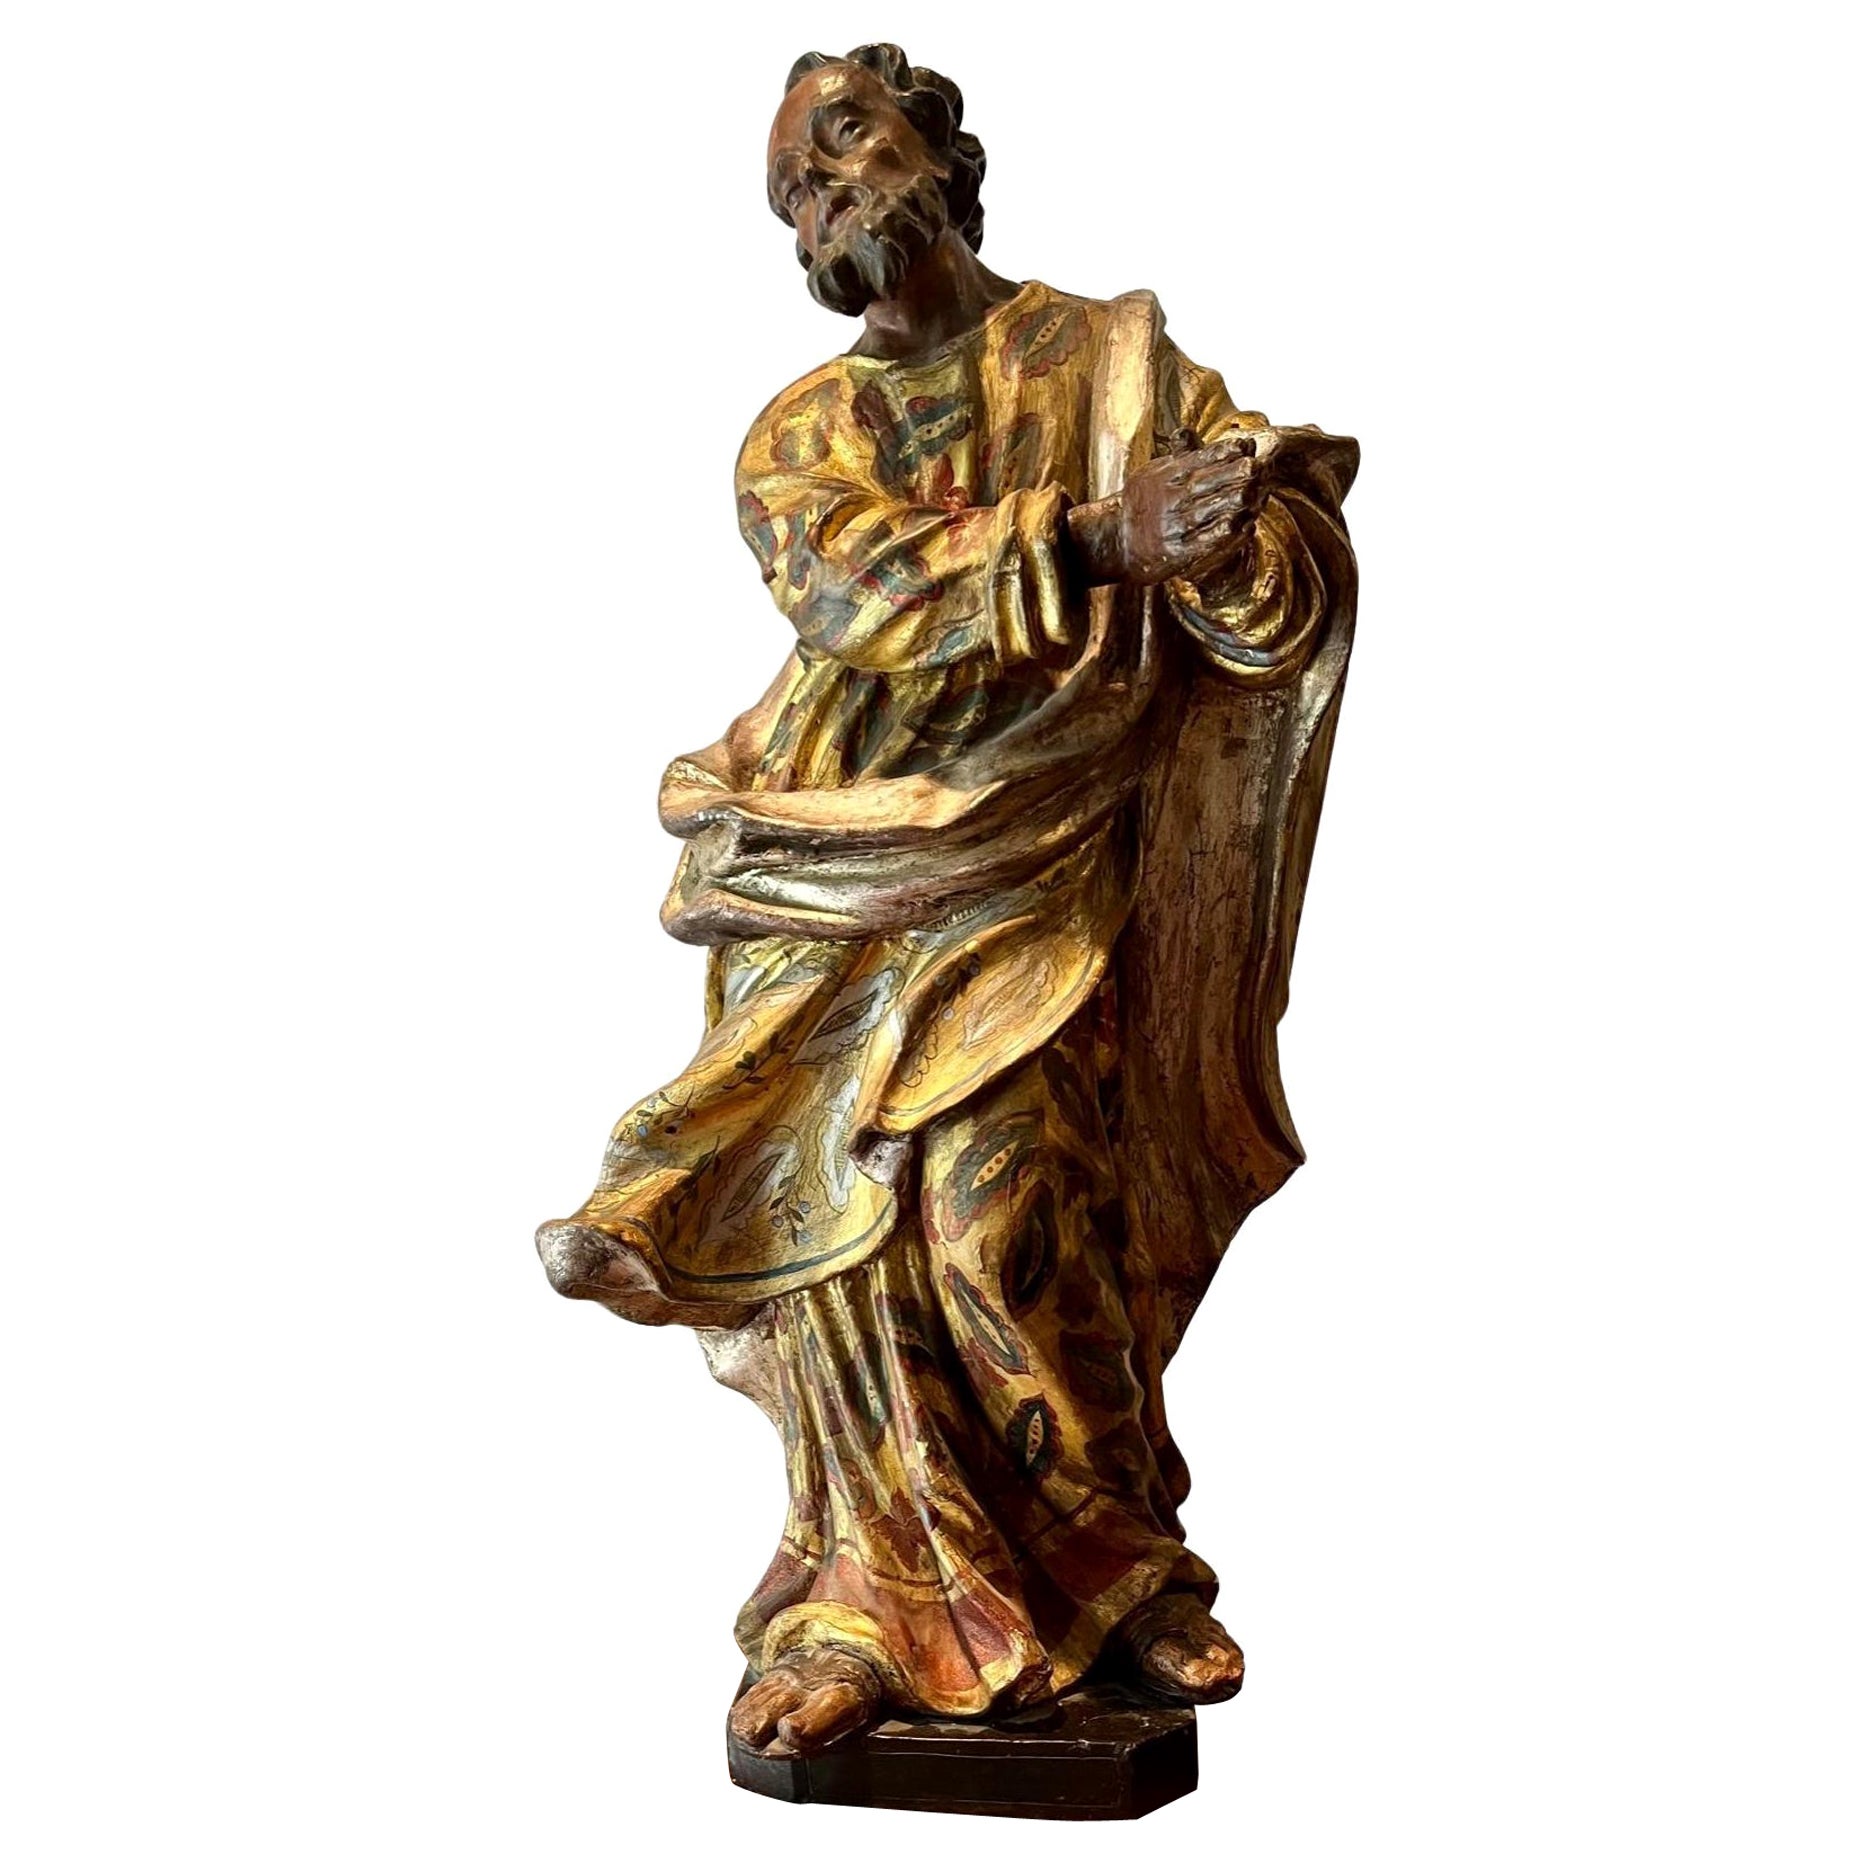 Figure de Saint Jean en bois sculpté, argent doré et polychrome du 17e siècle.